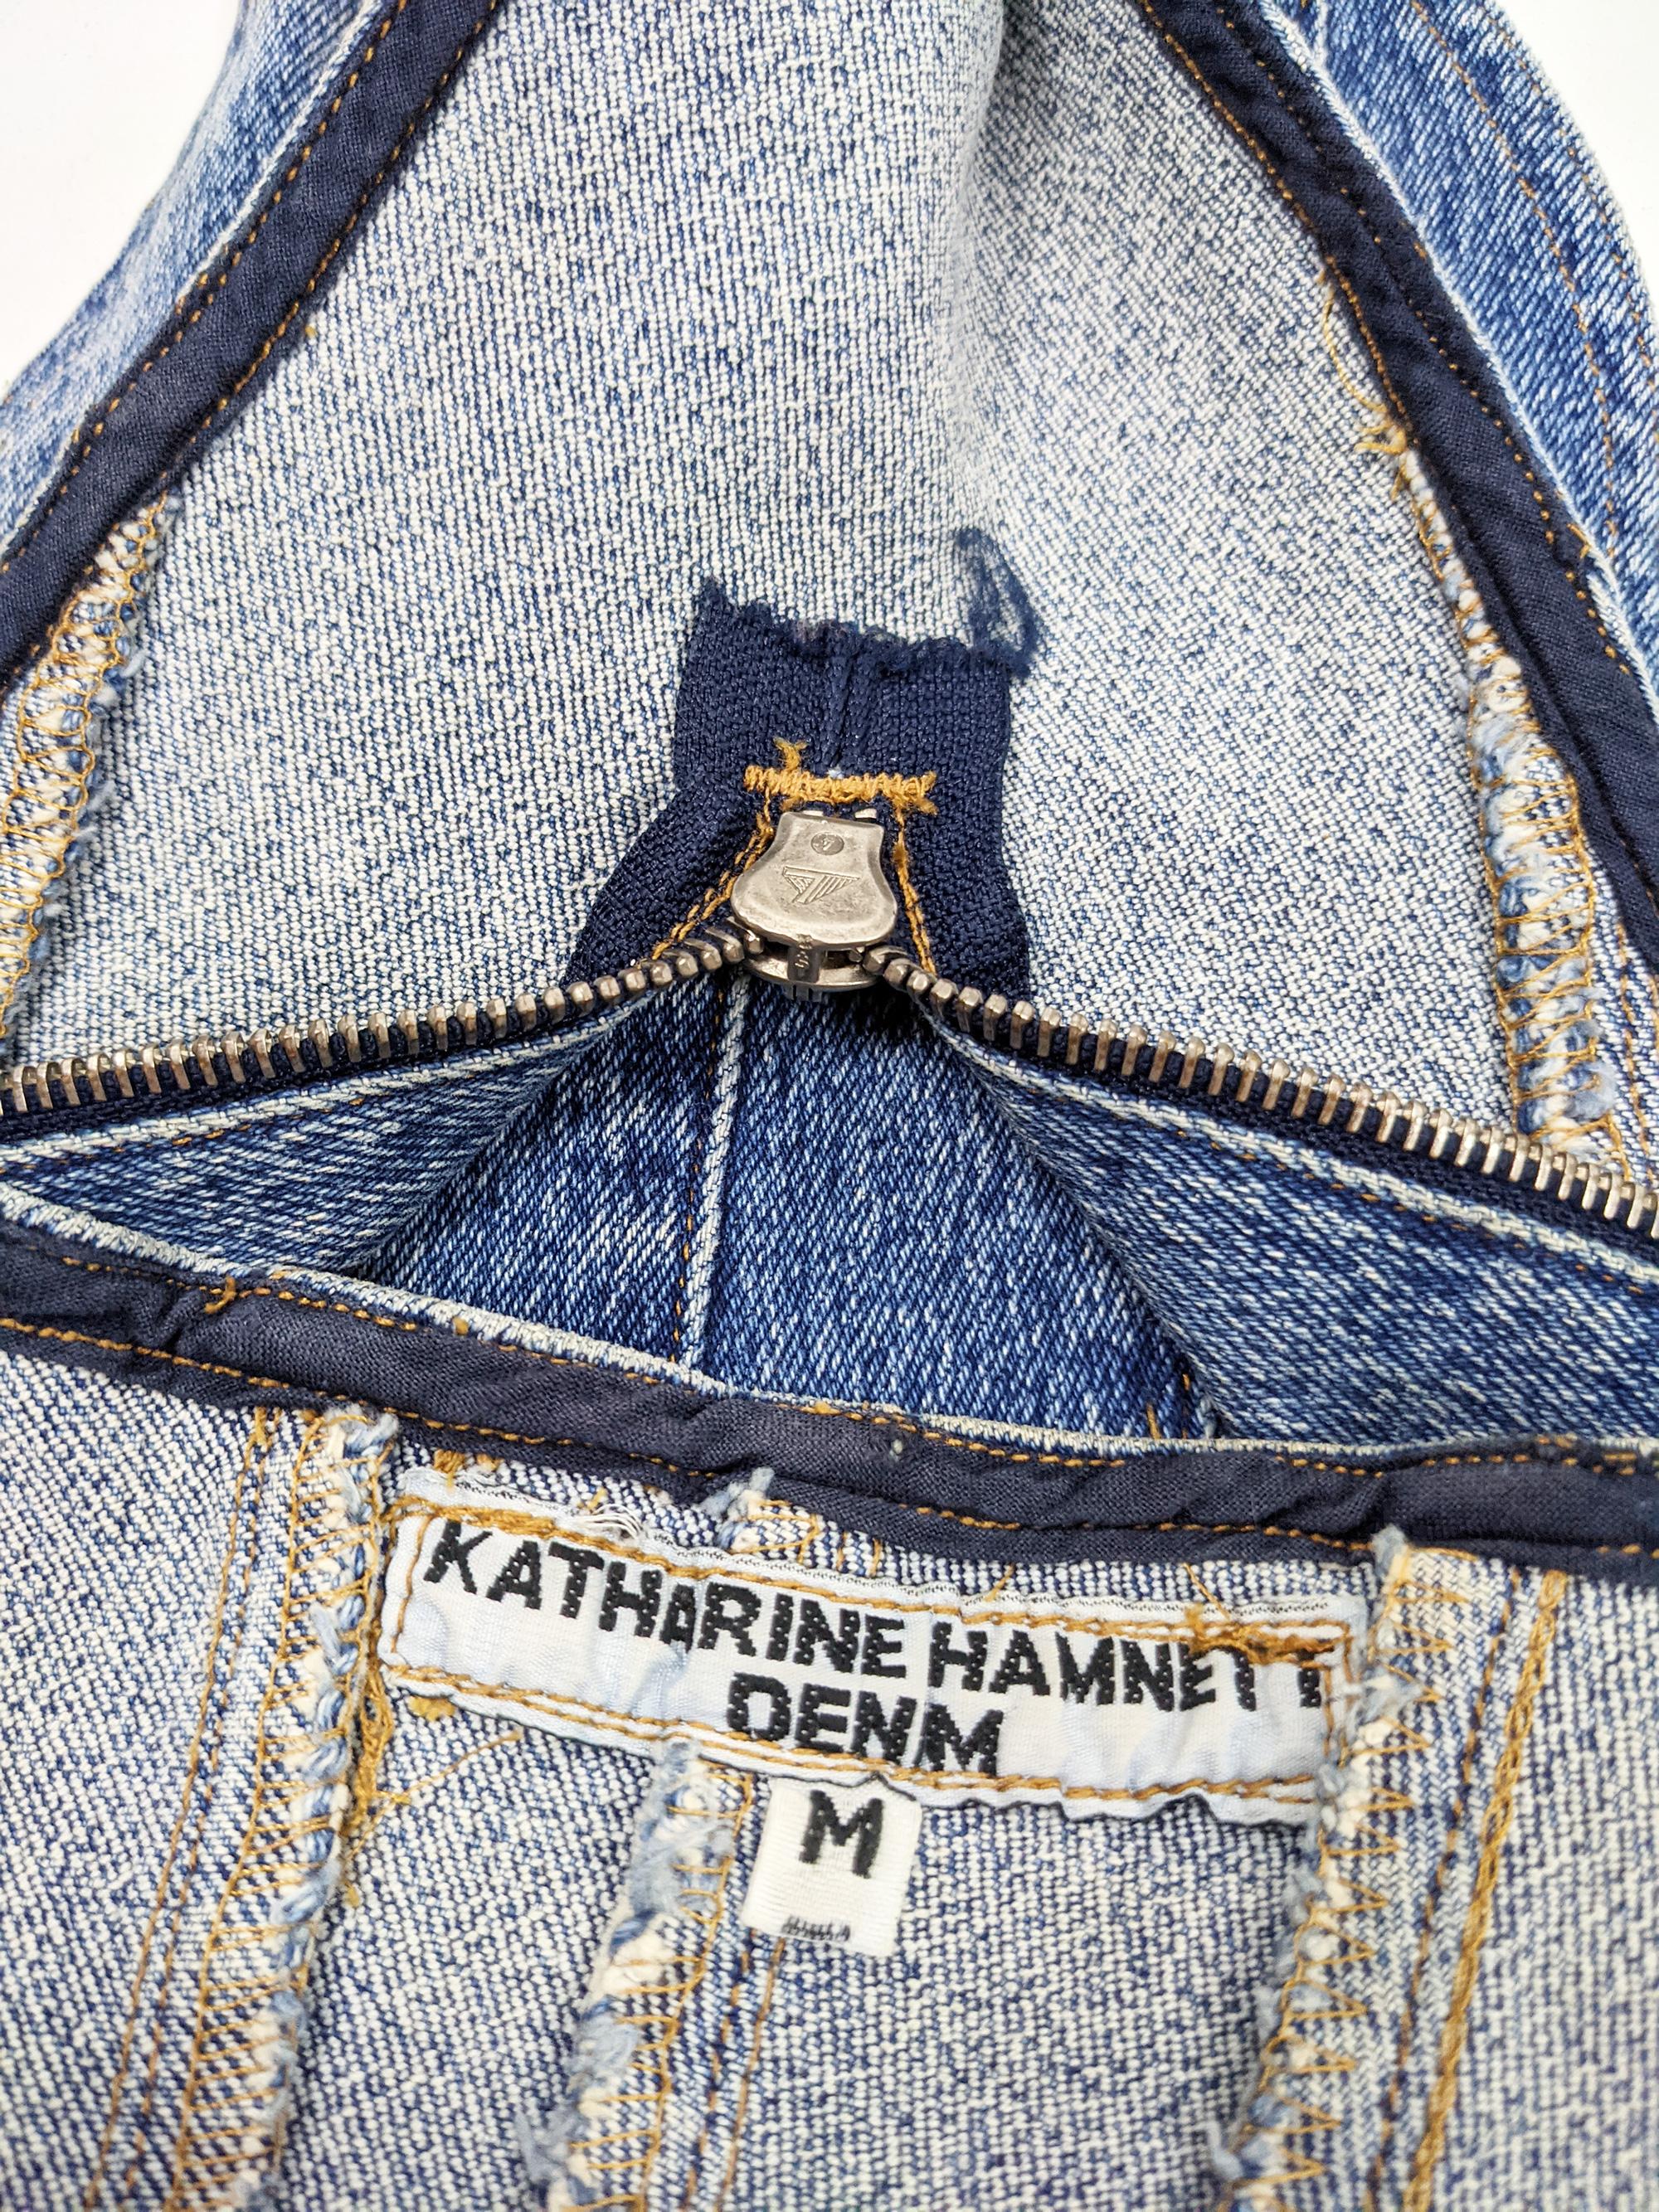 Katharine Hamnett Vintage Strapless Blue Denim Jean Bodysuit, 1990s 1